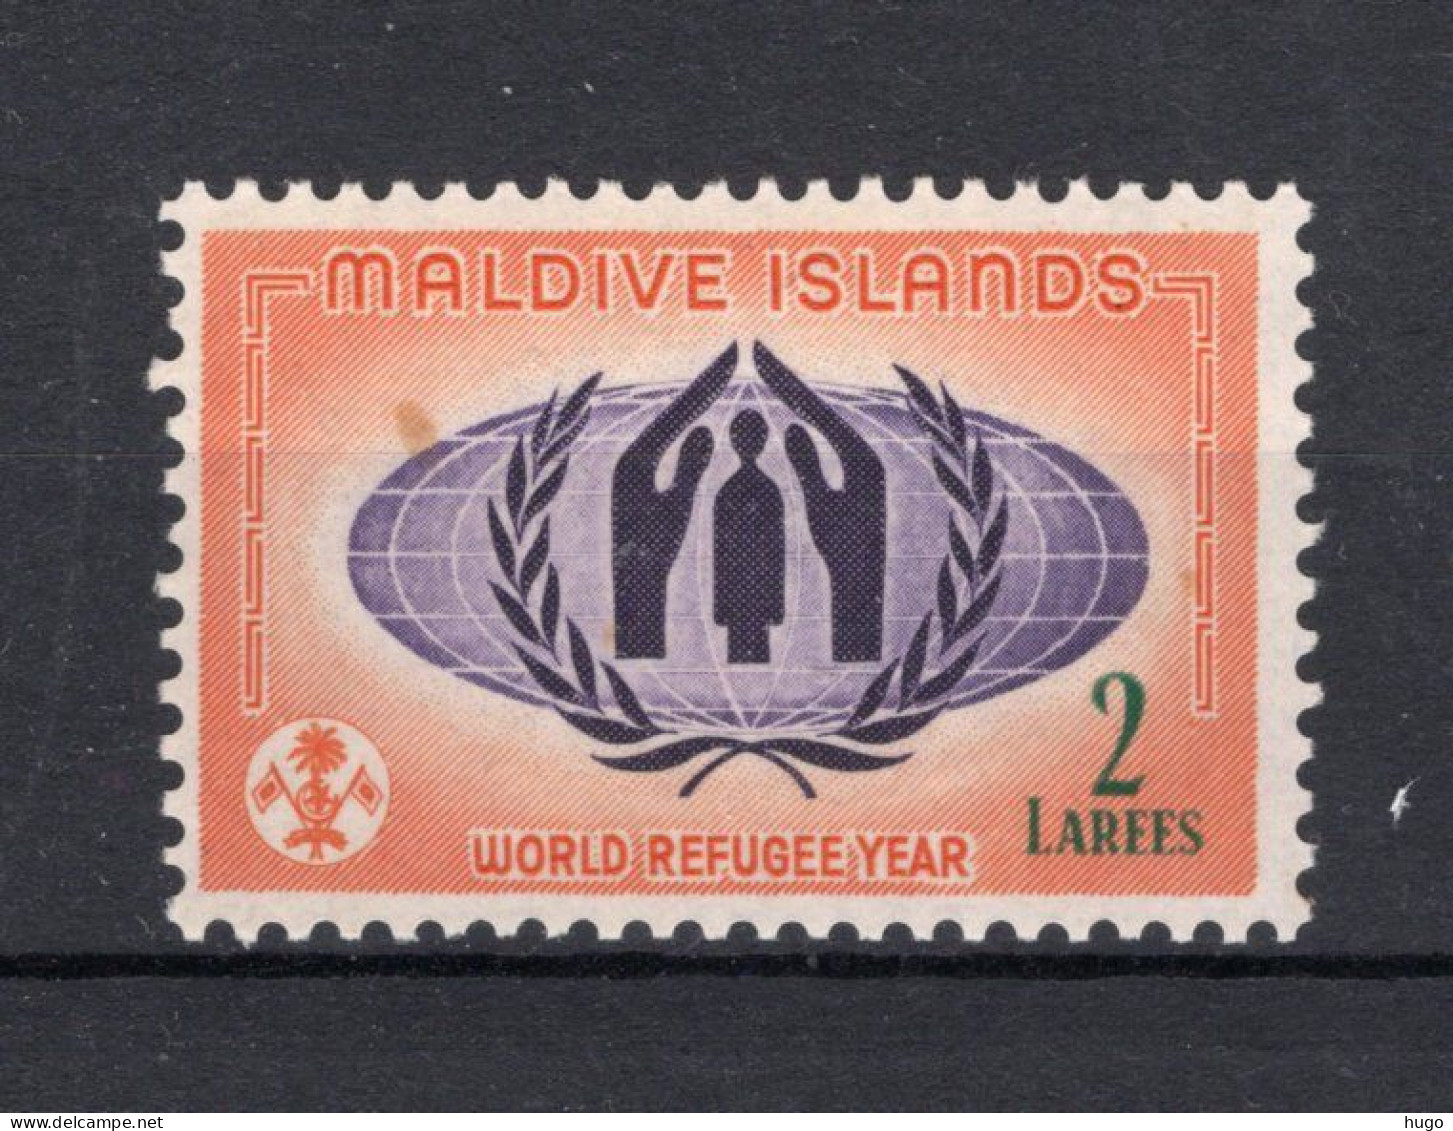 MALDIVE ISLANDS Yt. 39 MNH 1960 - Maldives (...-1965)